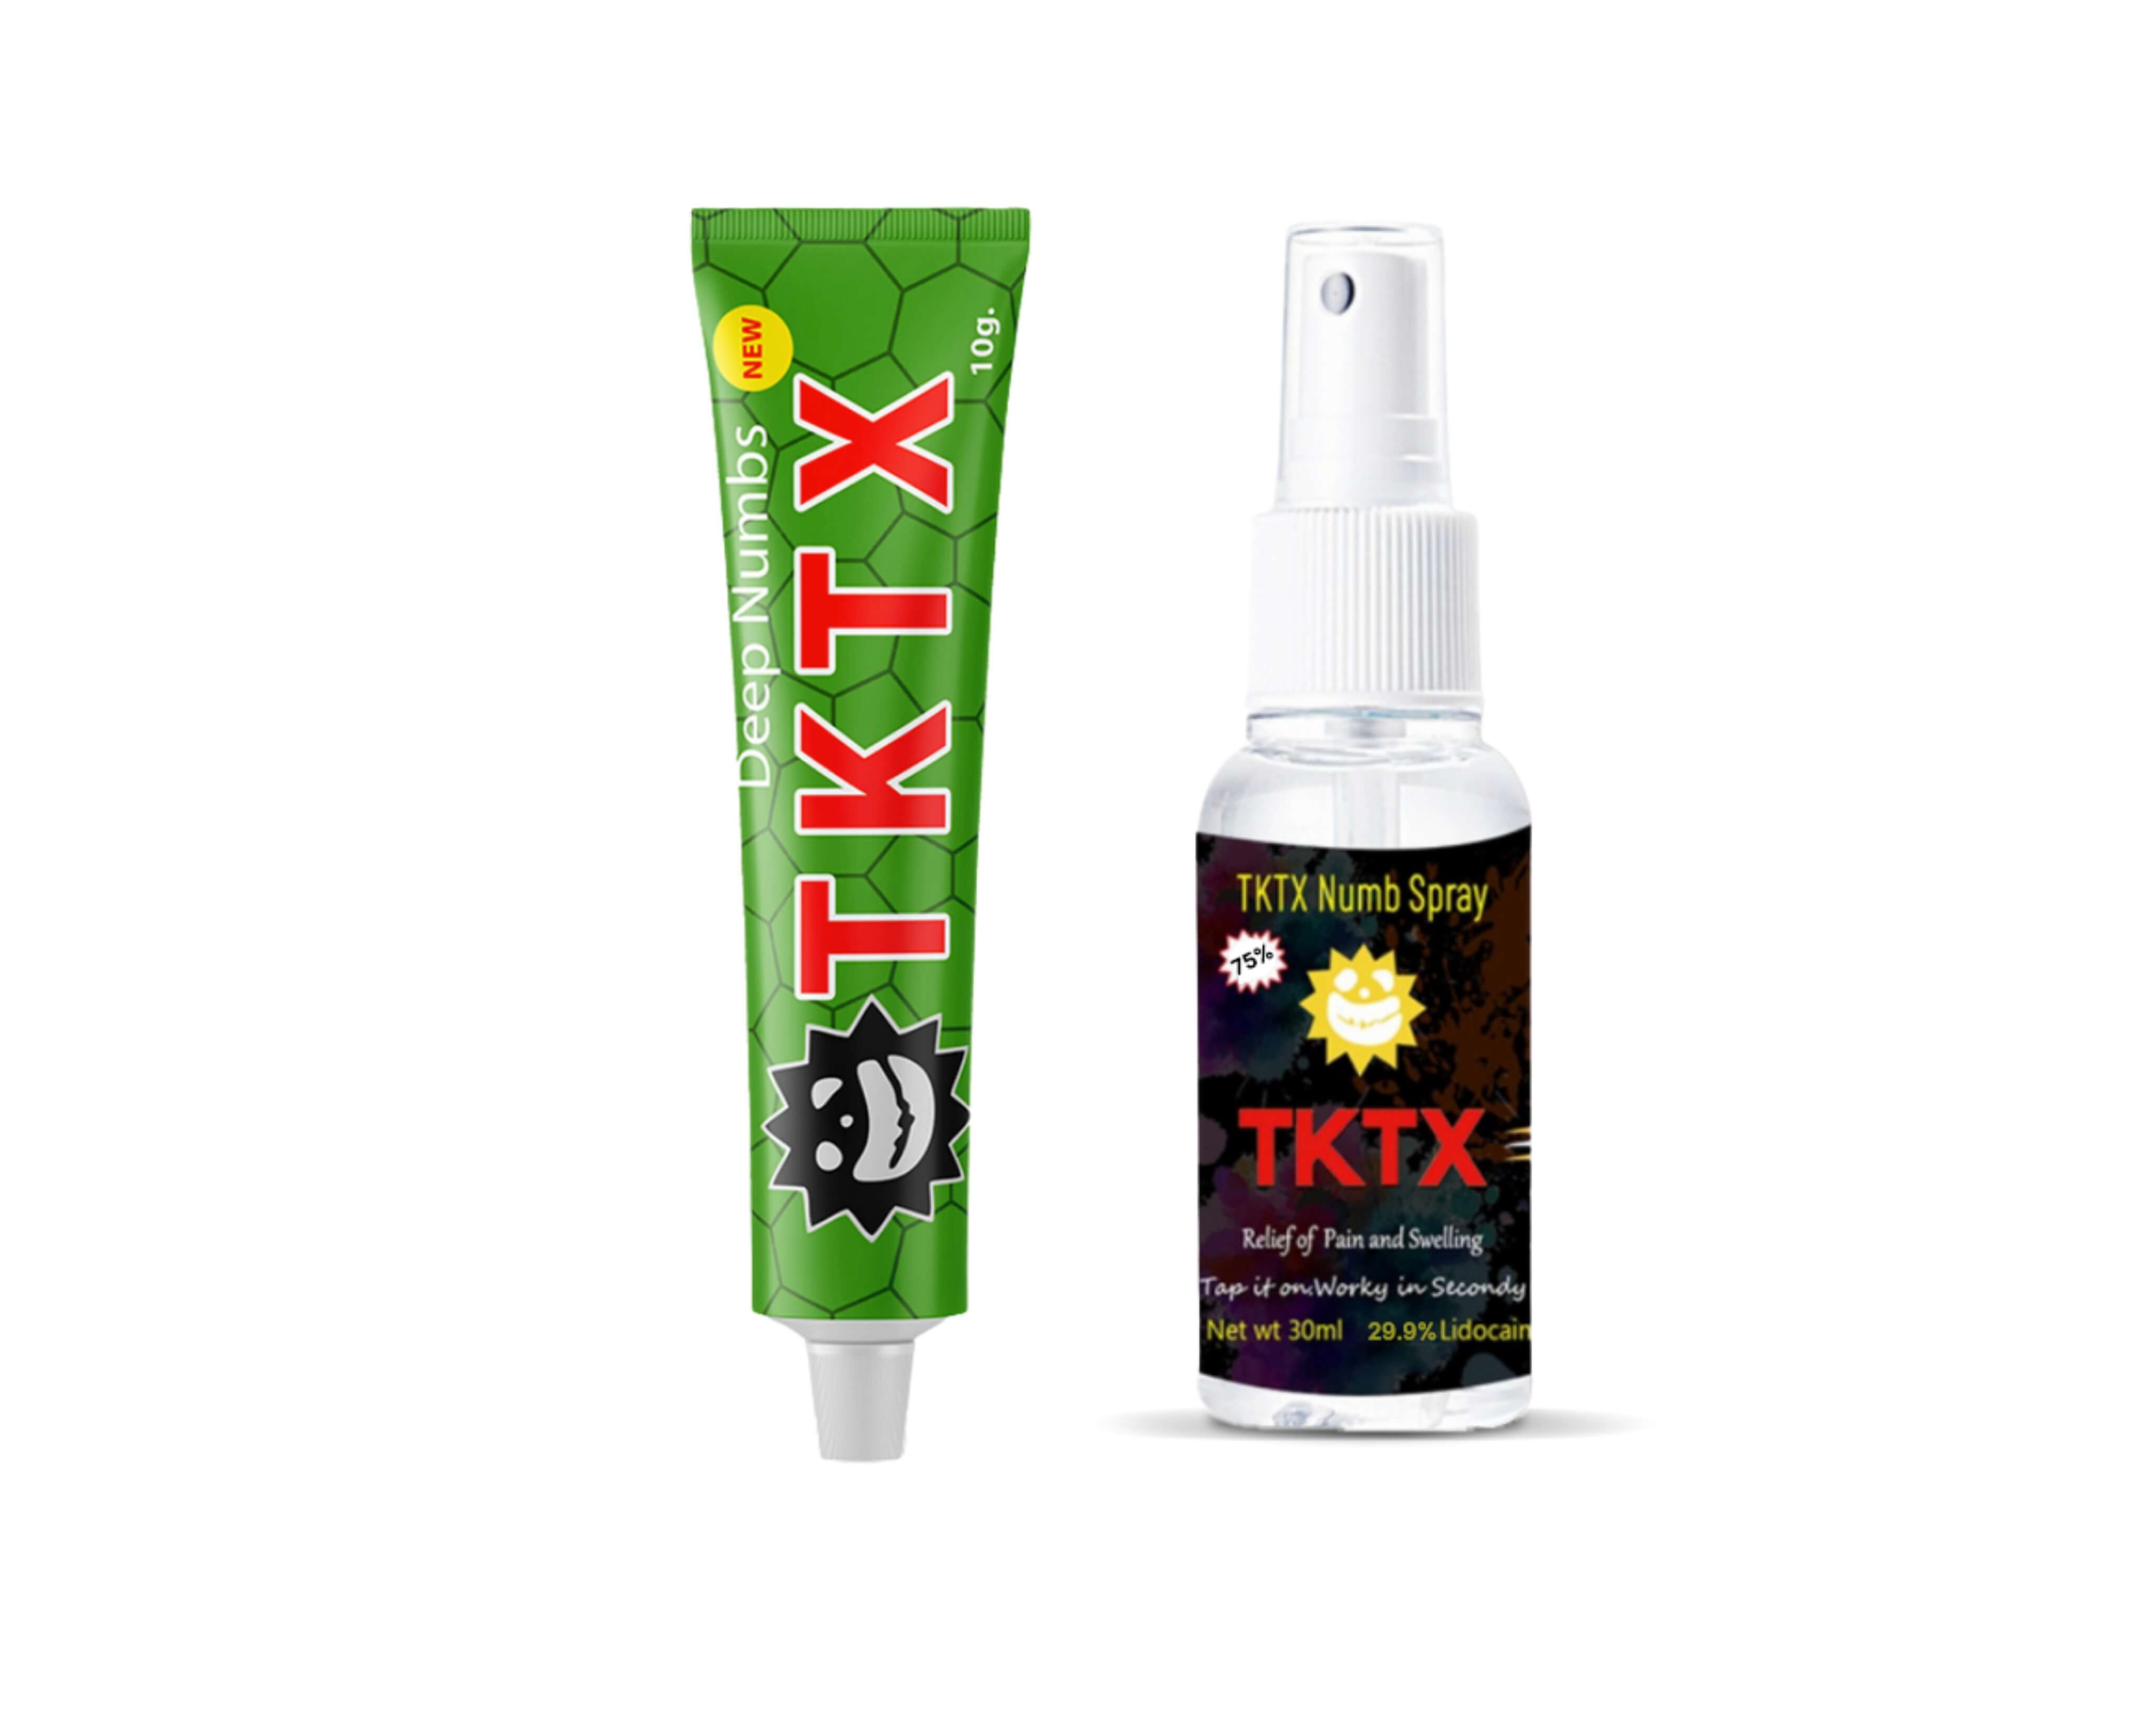 TKTX Combi Deal